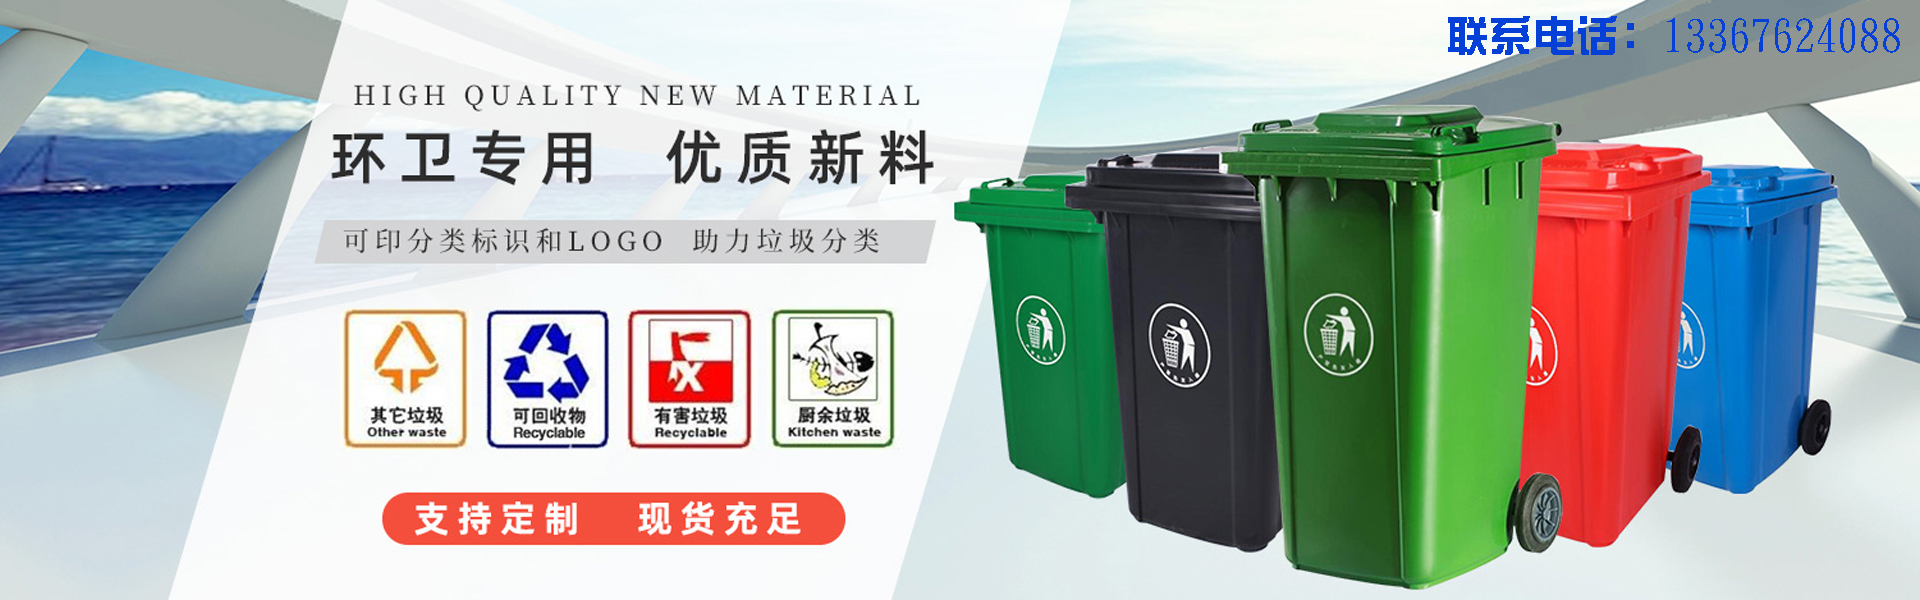 柳州垃圾桶,柳州塑料垃圾桶,广西垃圾桶